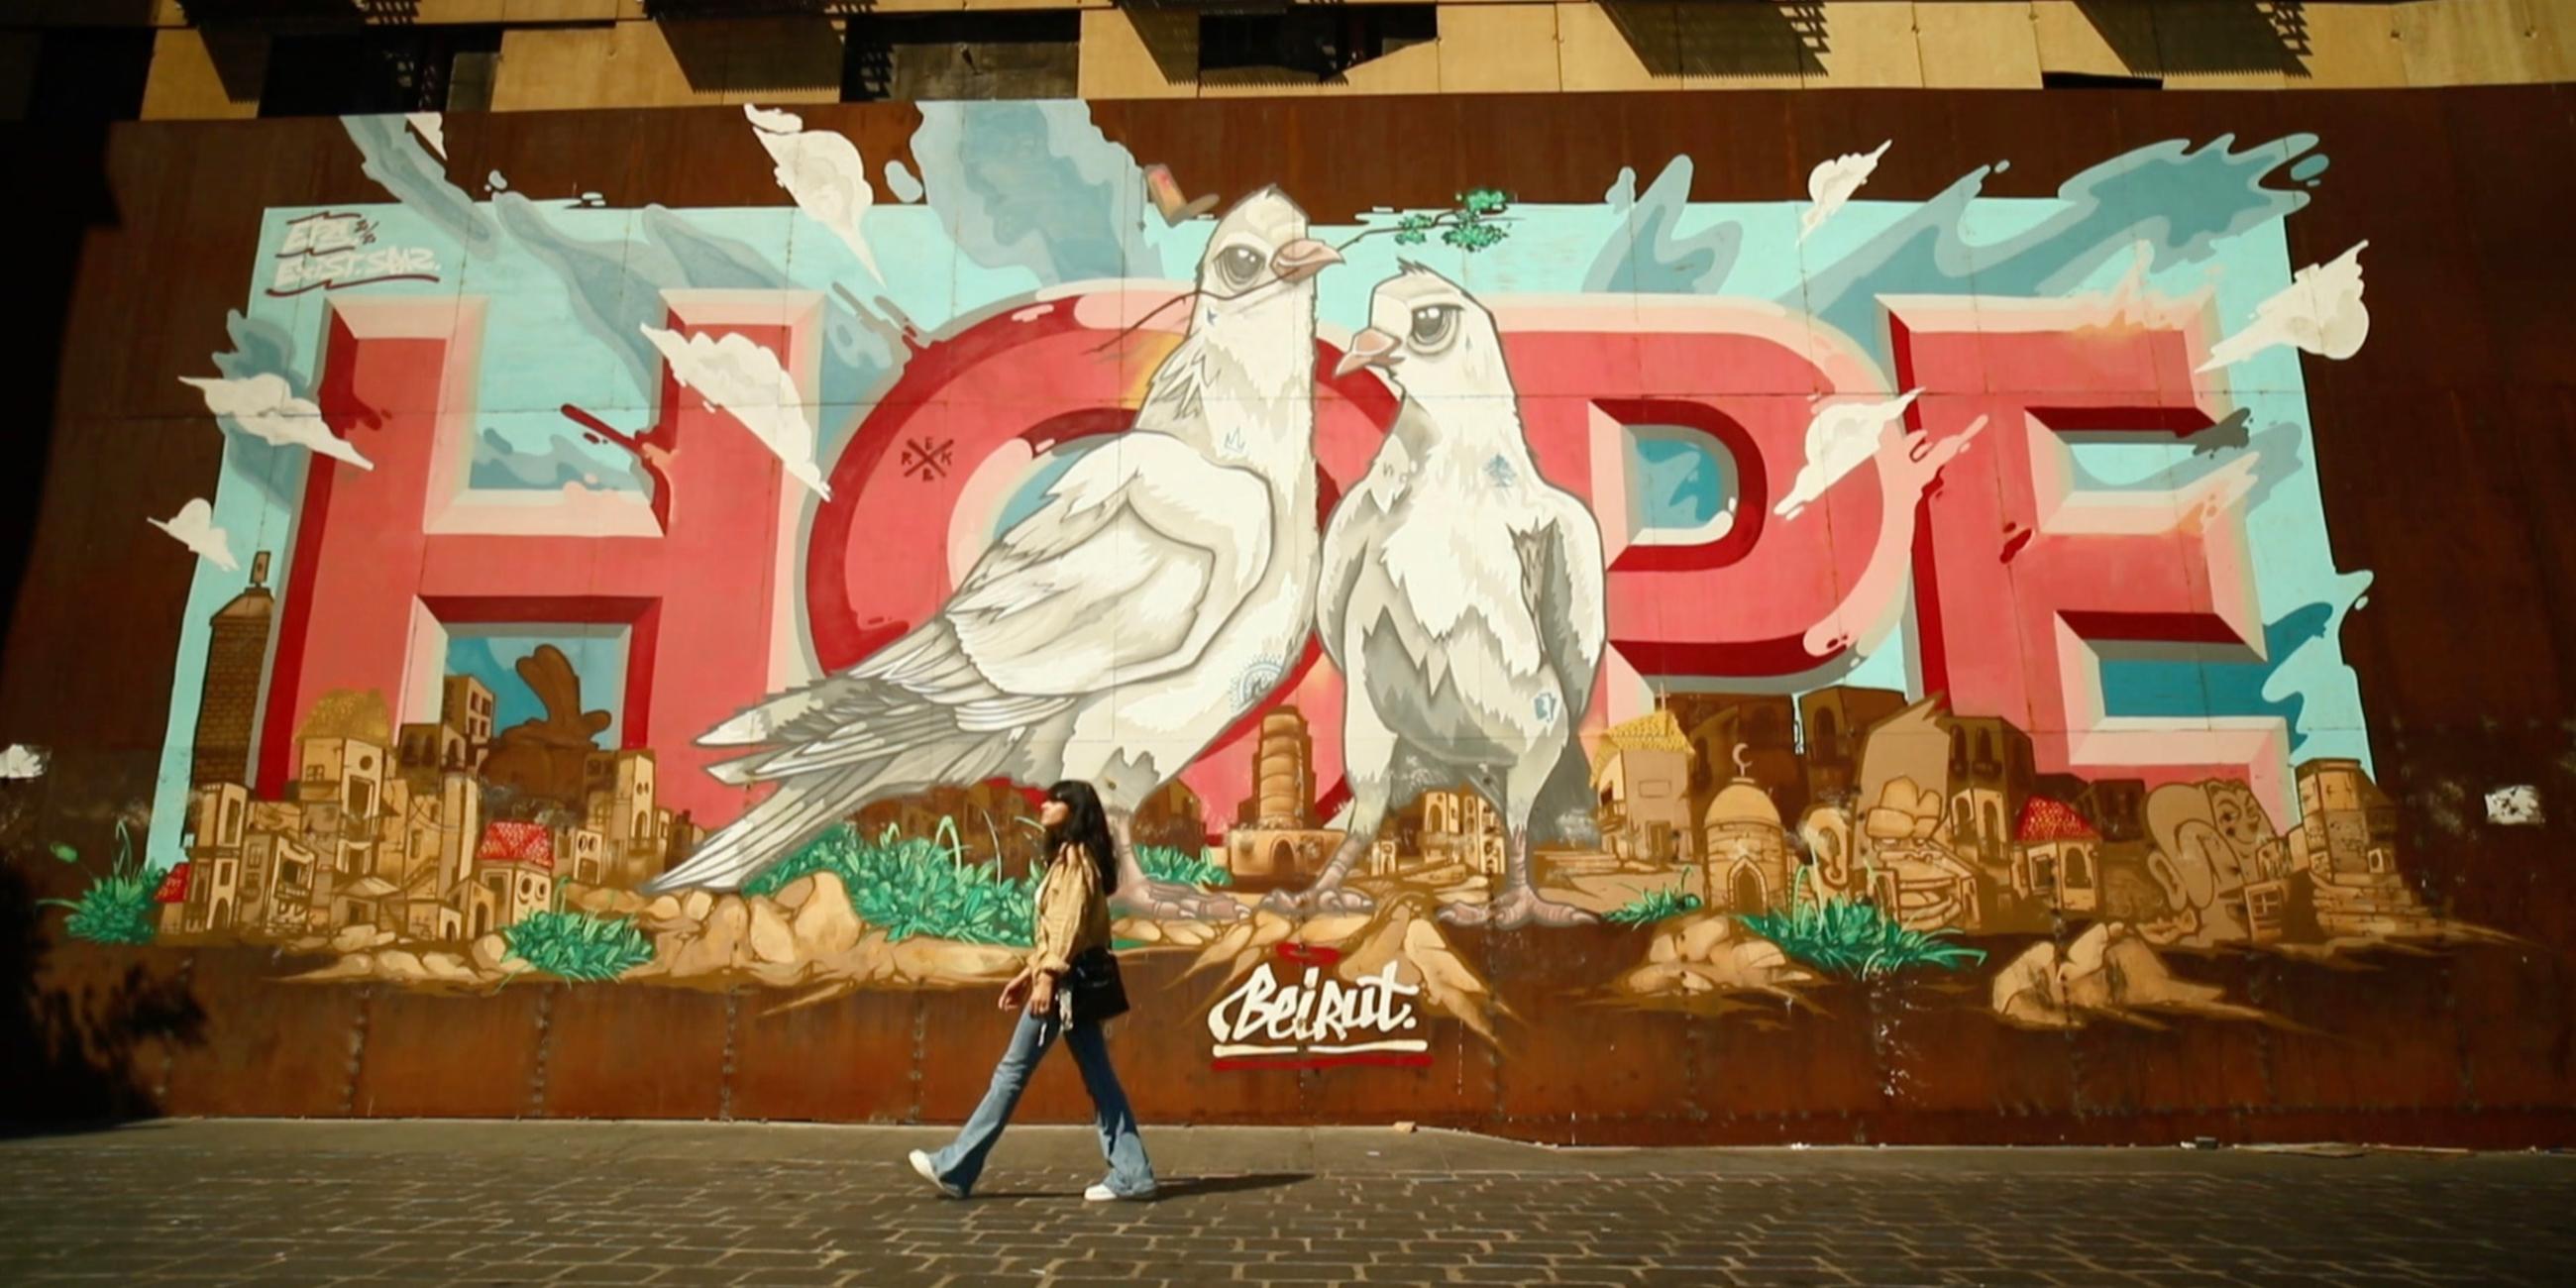  Auf eine Mauer sind zwei große weiße Tauben gemalt, die in einer Stadt stehen. Hinter ihnen ist das Wort "Hope" zu lesen. Vor der Mauer läuft eine junge Frau vorbei.